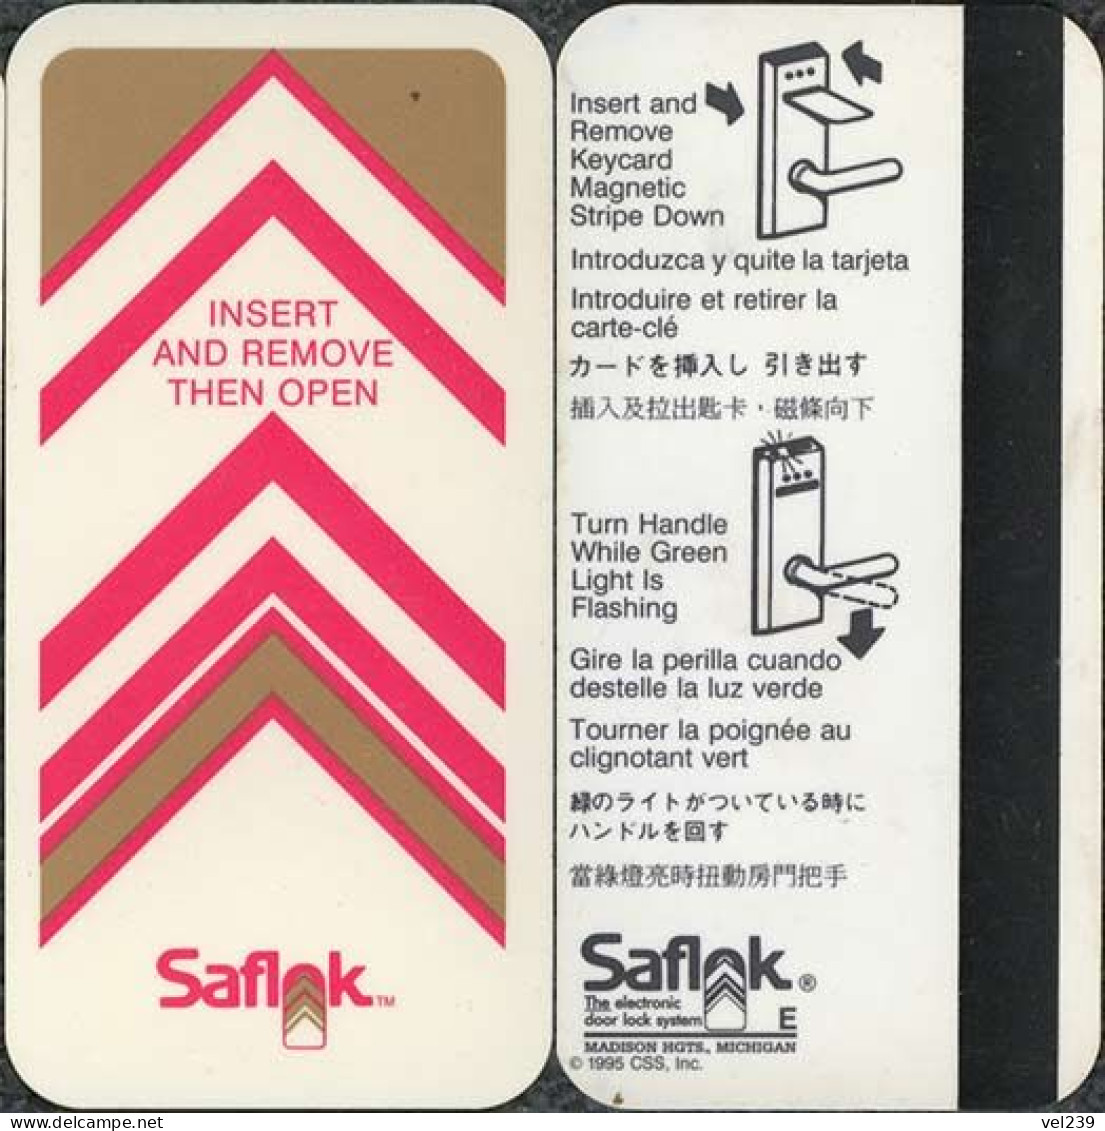 Saflock - Cartes D'hotel